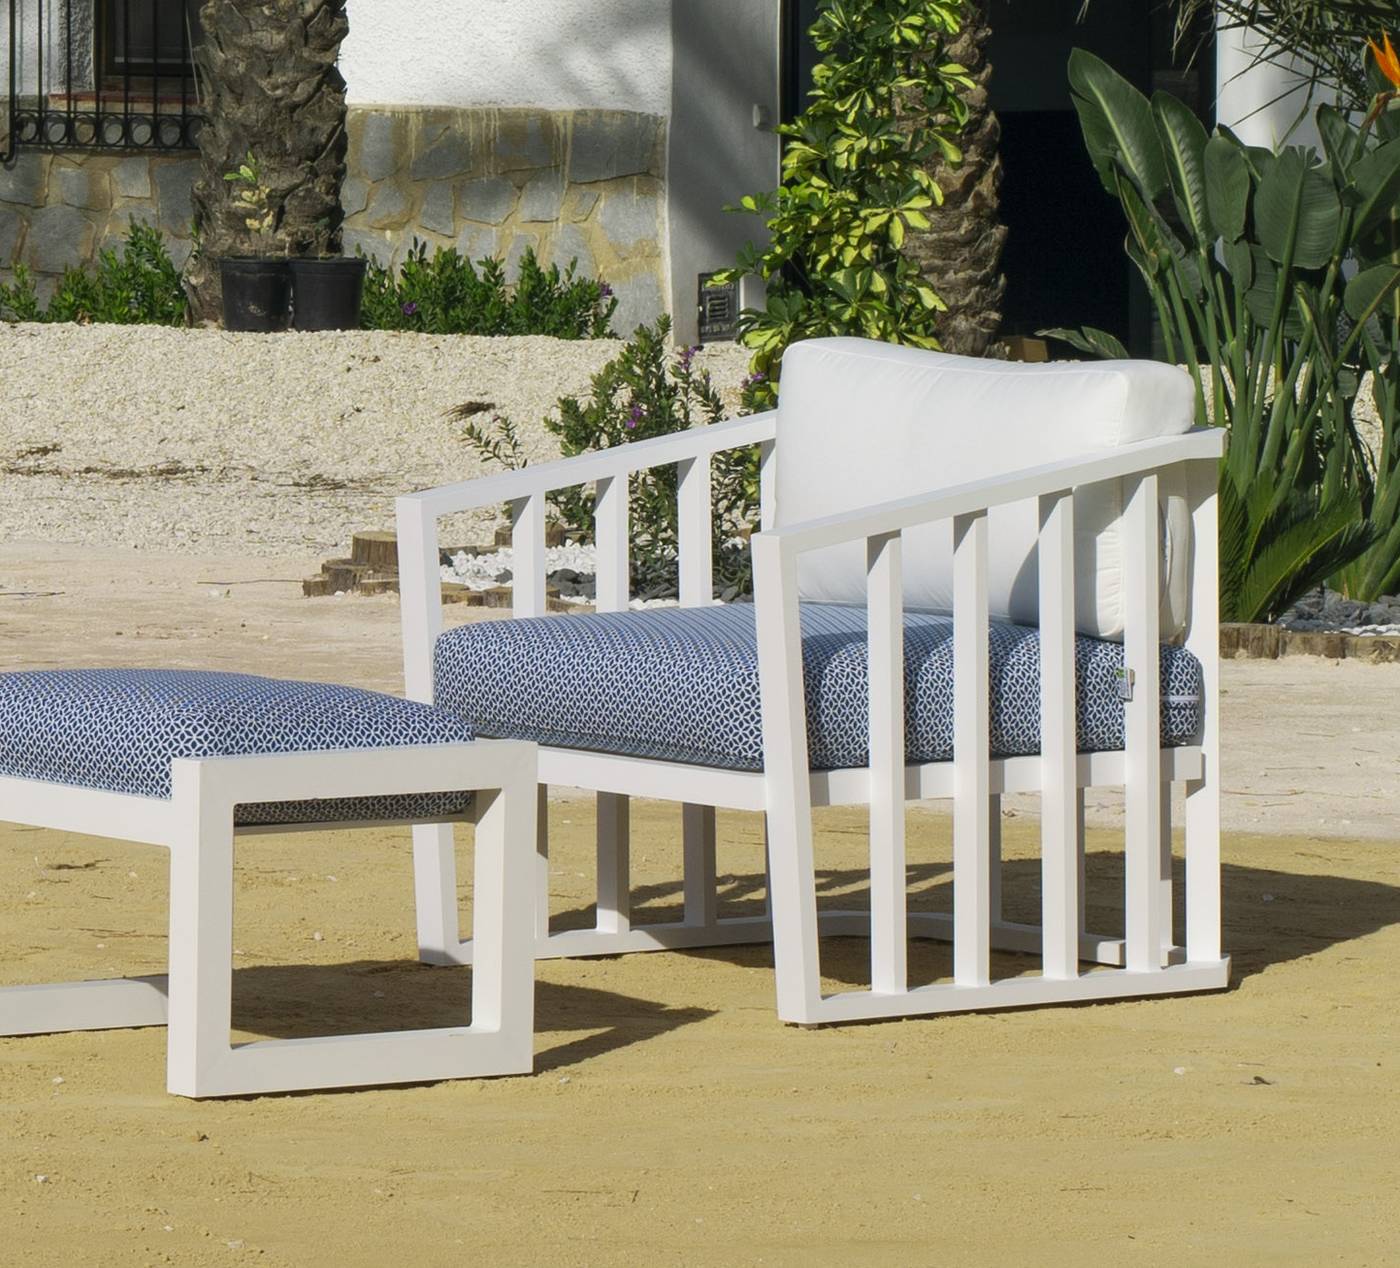 Set Aluminio Birmania-7 - Conjunto confort aluminio: 1 sofá 2 plazas + 2 sillones + 1 mesa de centro + cojines. Disponible en color blanco o antracita.